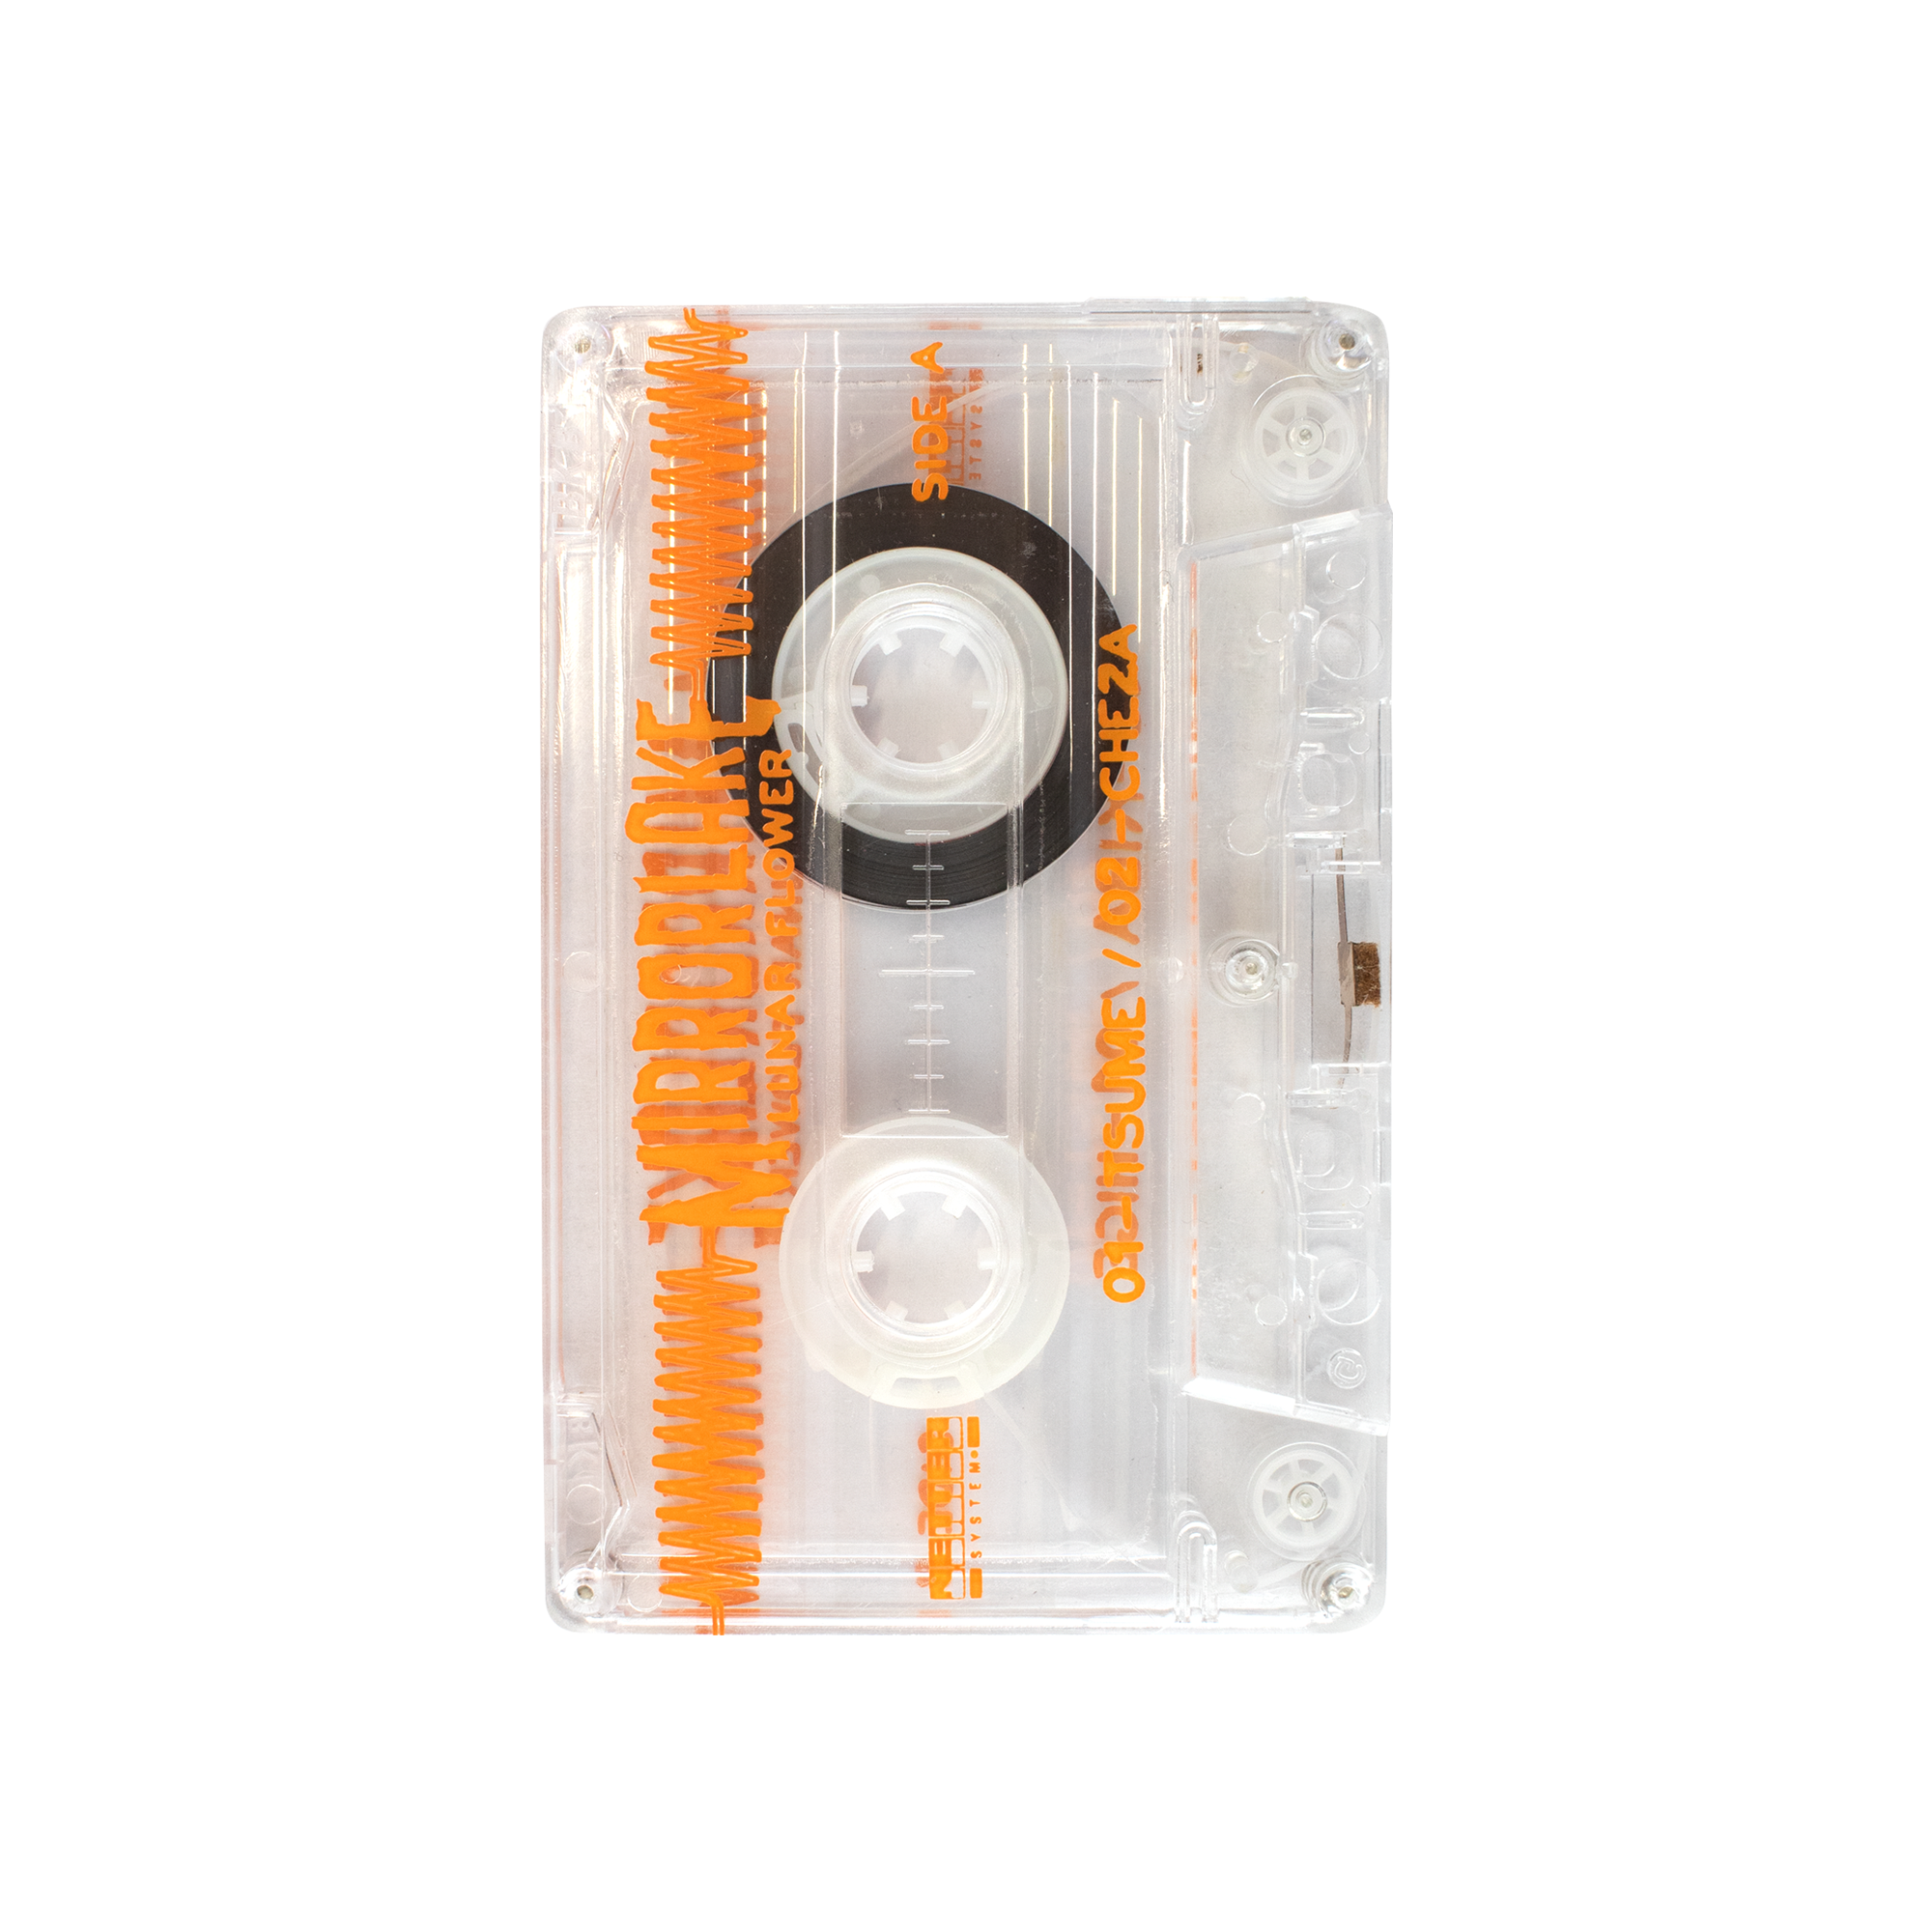 Netter System 002 - MirrorLake Cassette Tape